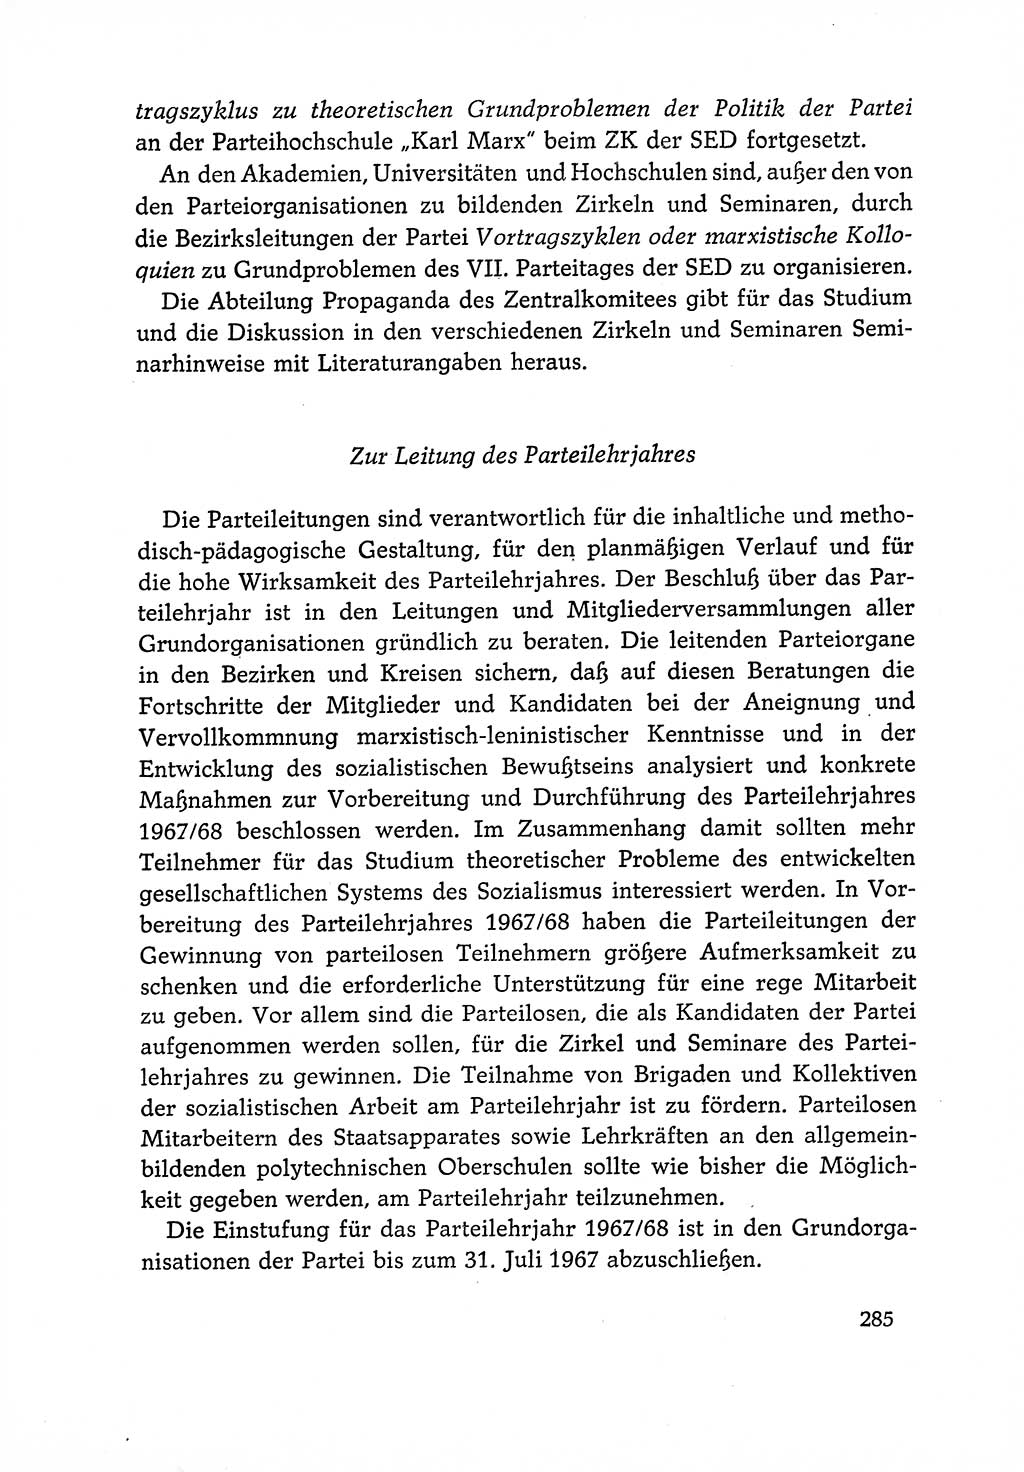 Dokumente der Sozialistischen Einheitspartei Deutschlands (SED) [Deutsche Demokratische Republik (DDR)] 1966-1967, Seite 285 (Dok. SED DDR 1966-1967, S. 285)